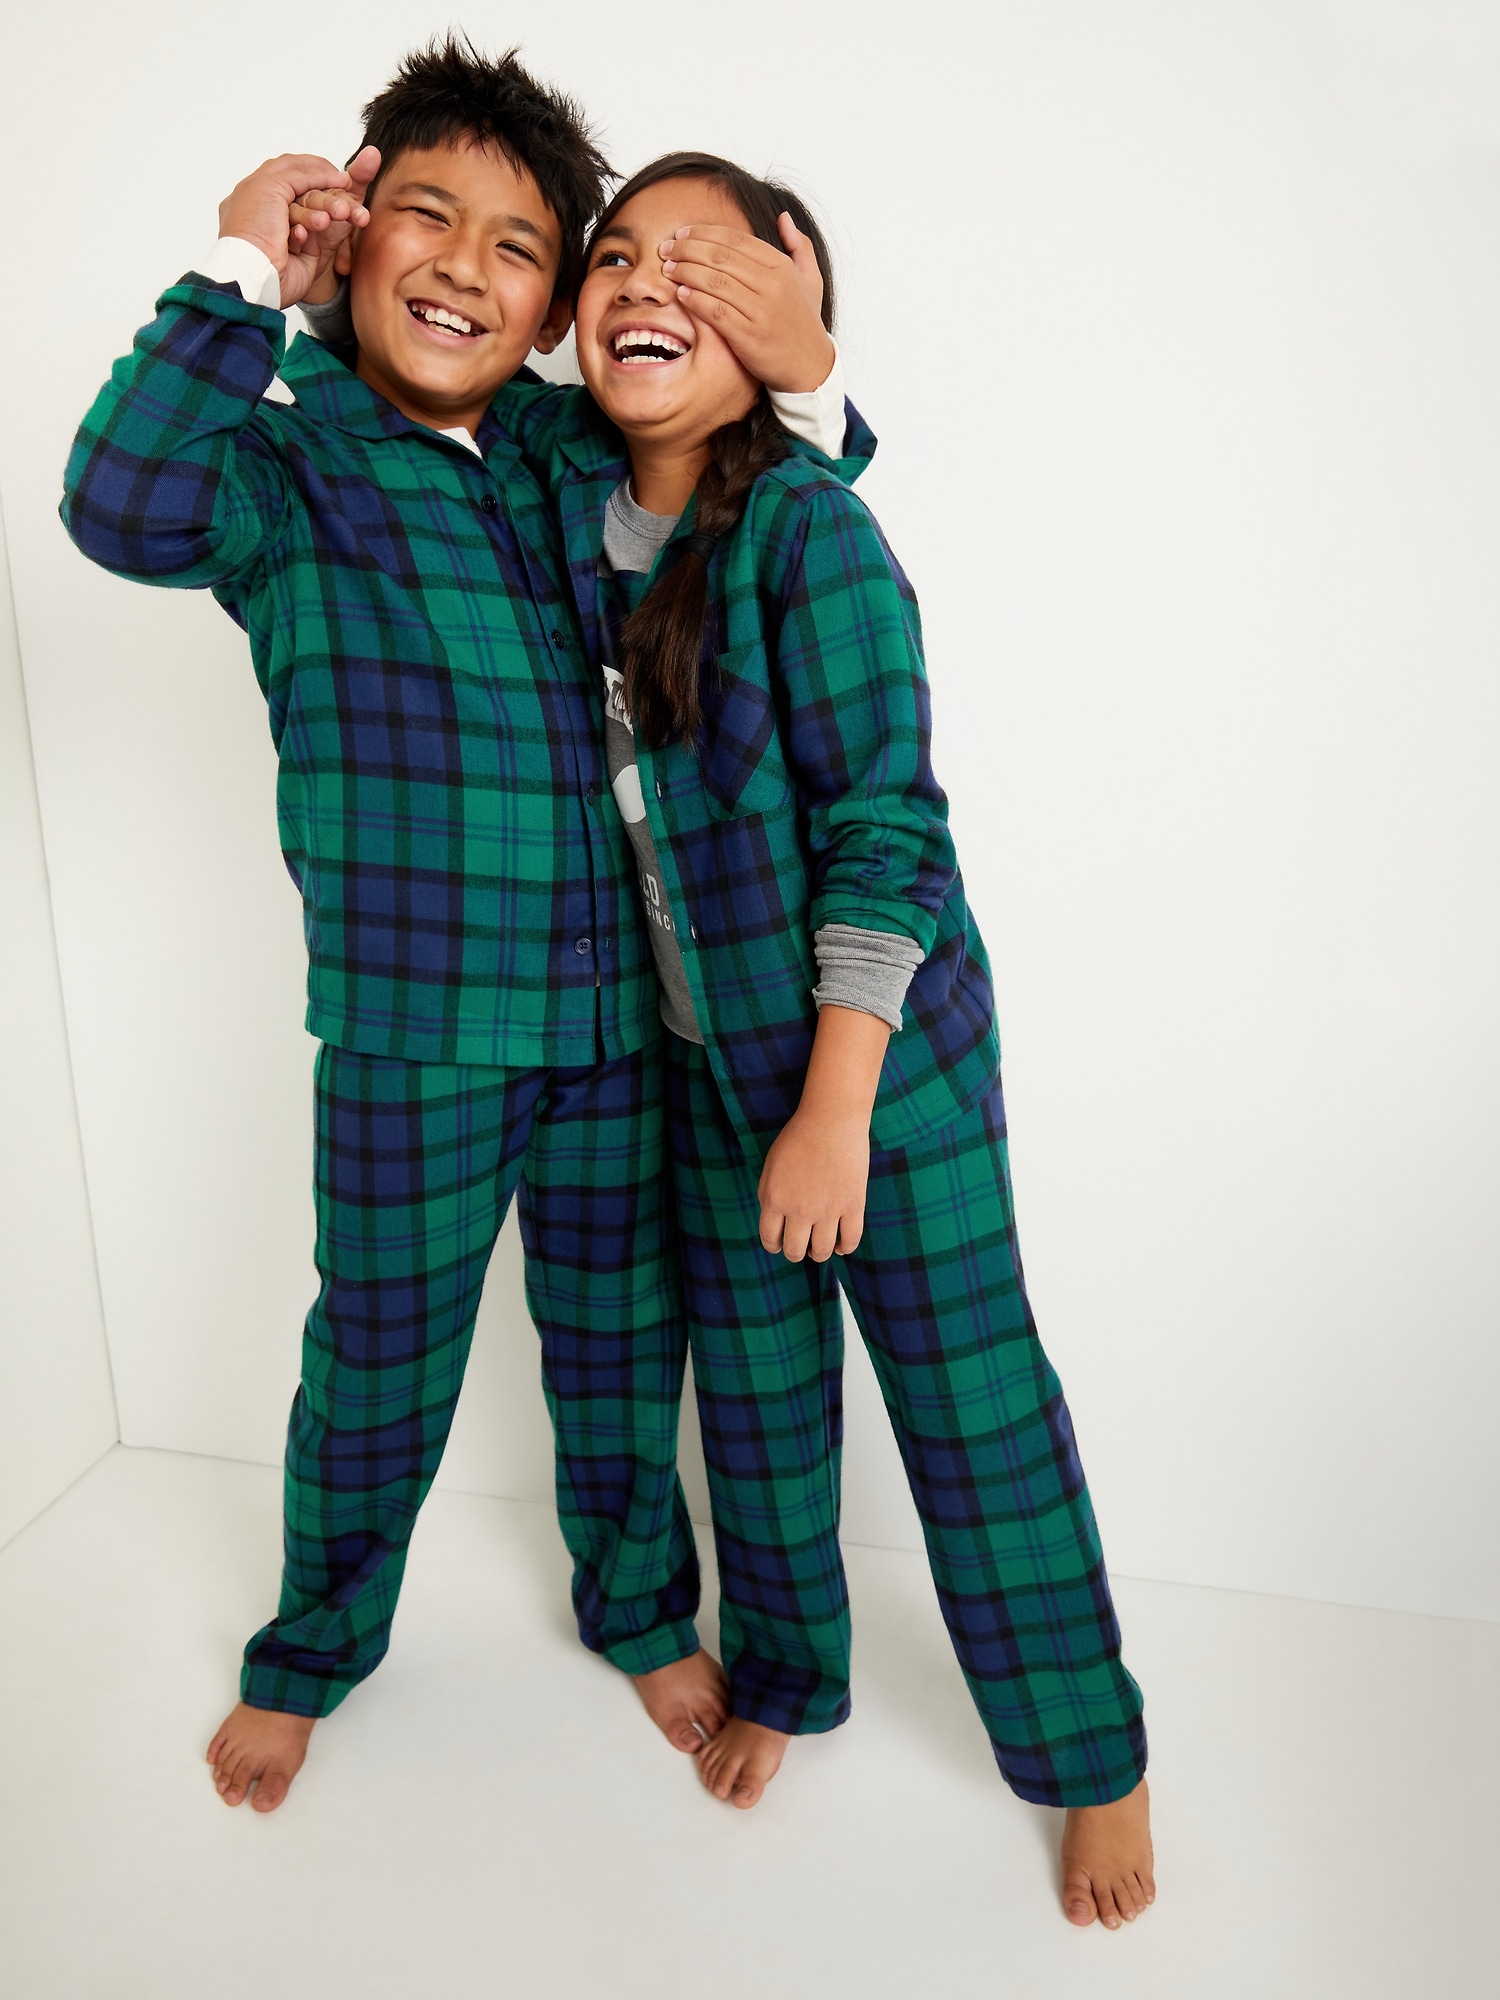 Patterned Gender-Neutral Flannel Pajama Set For Kids